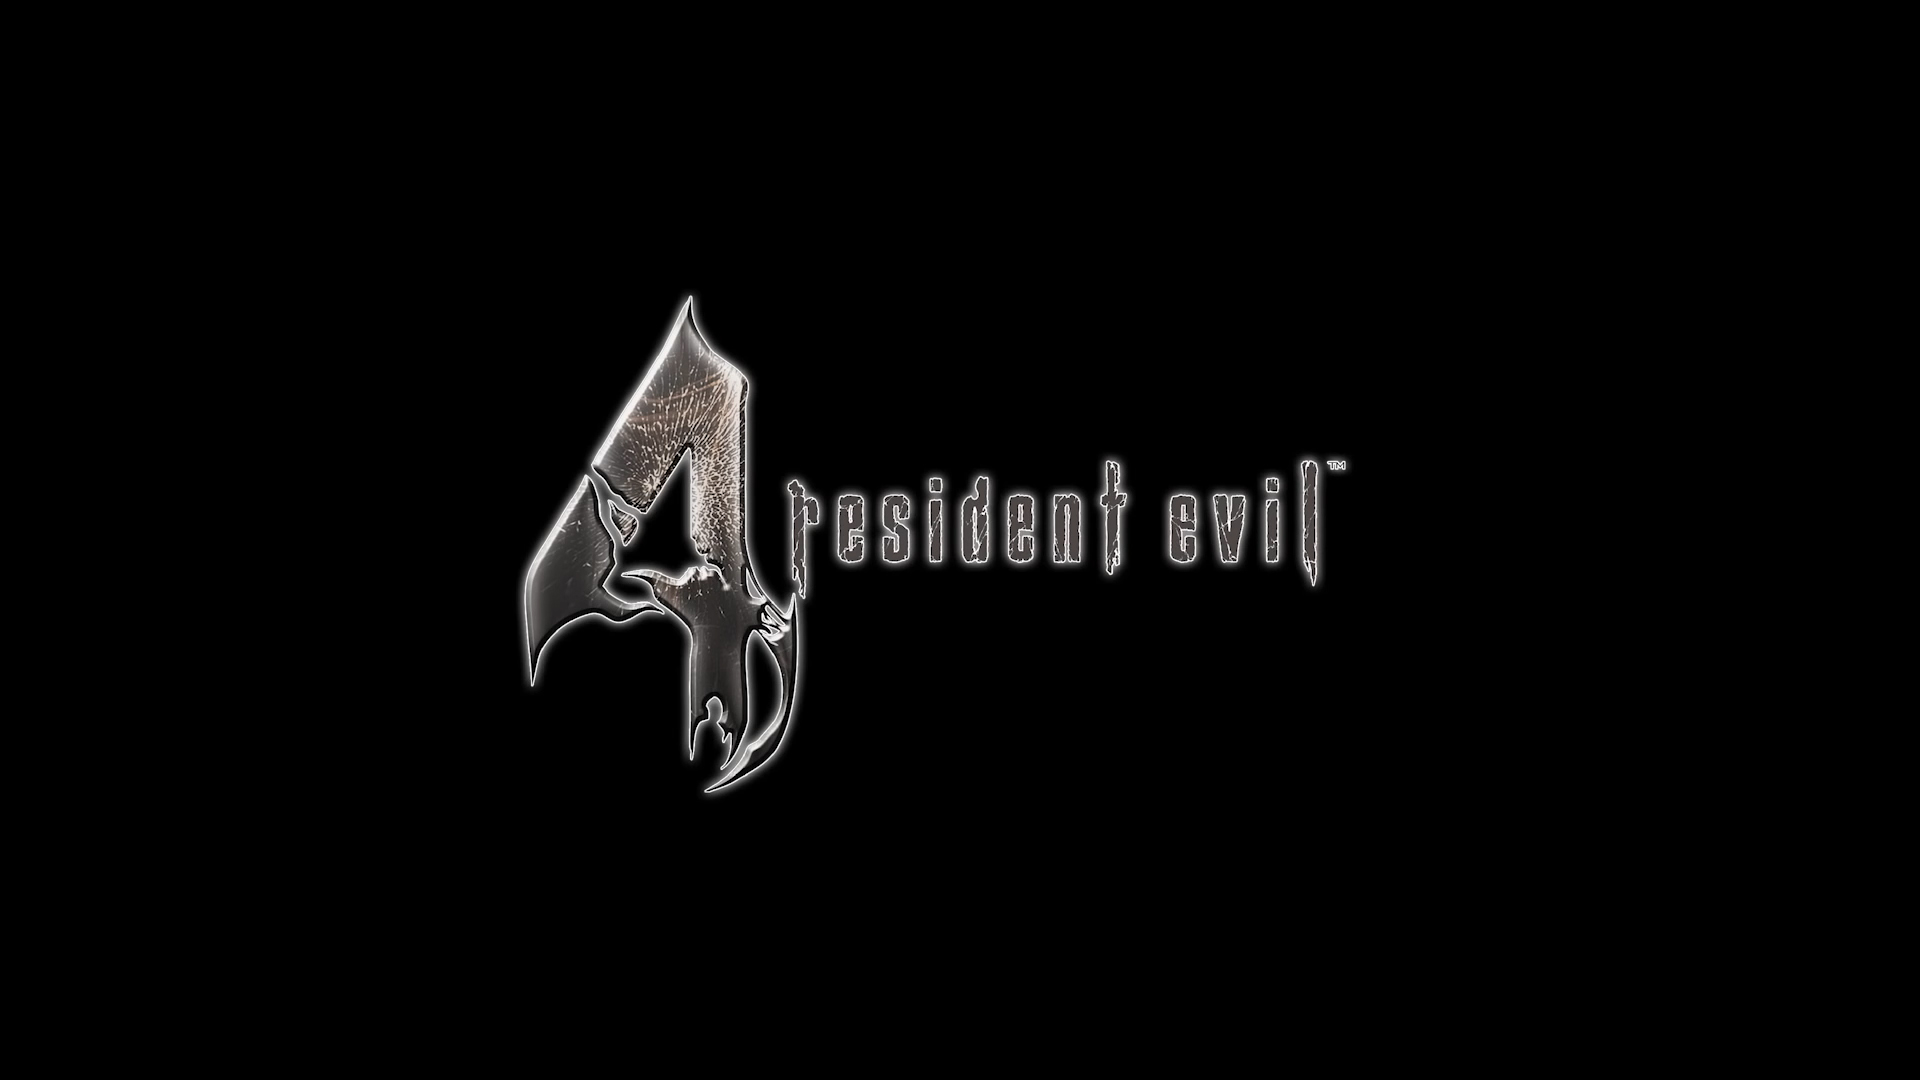 Capcom เผยรายละเอียดแรกของ Resident Evil 4 VR